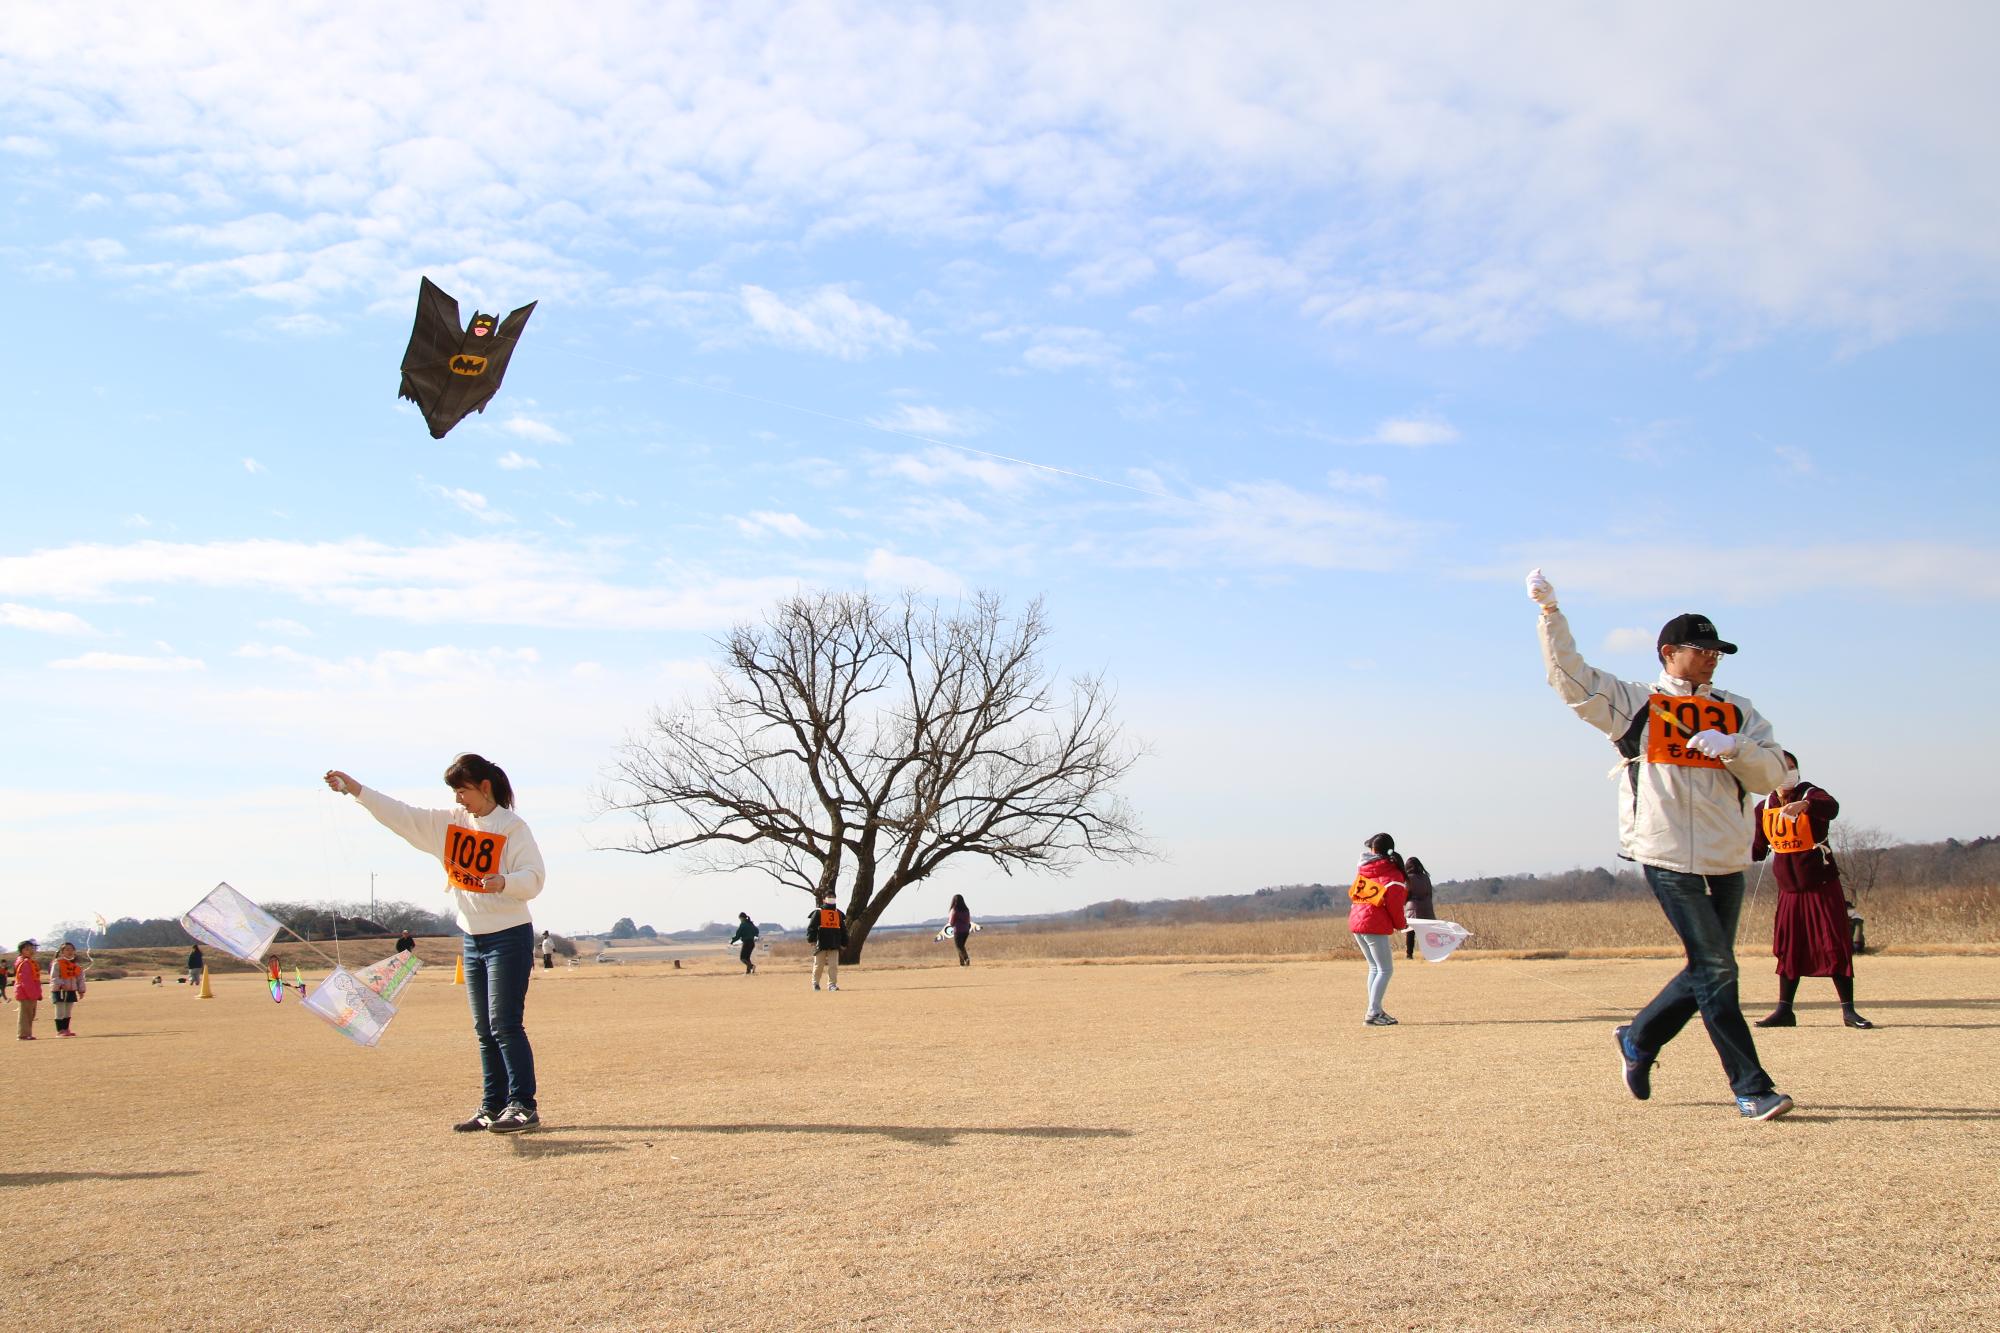 晴天の中凧を高く上げようとしている人たちの写真